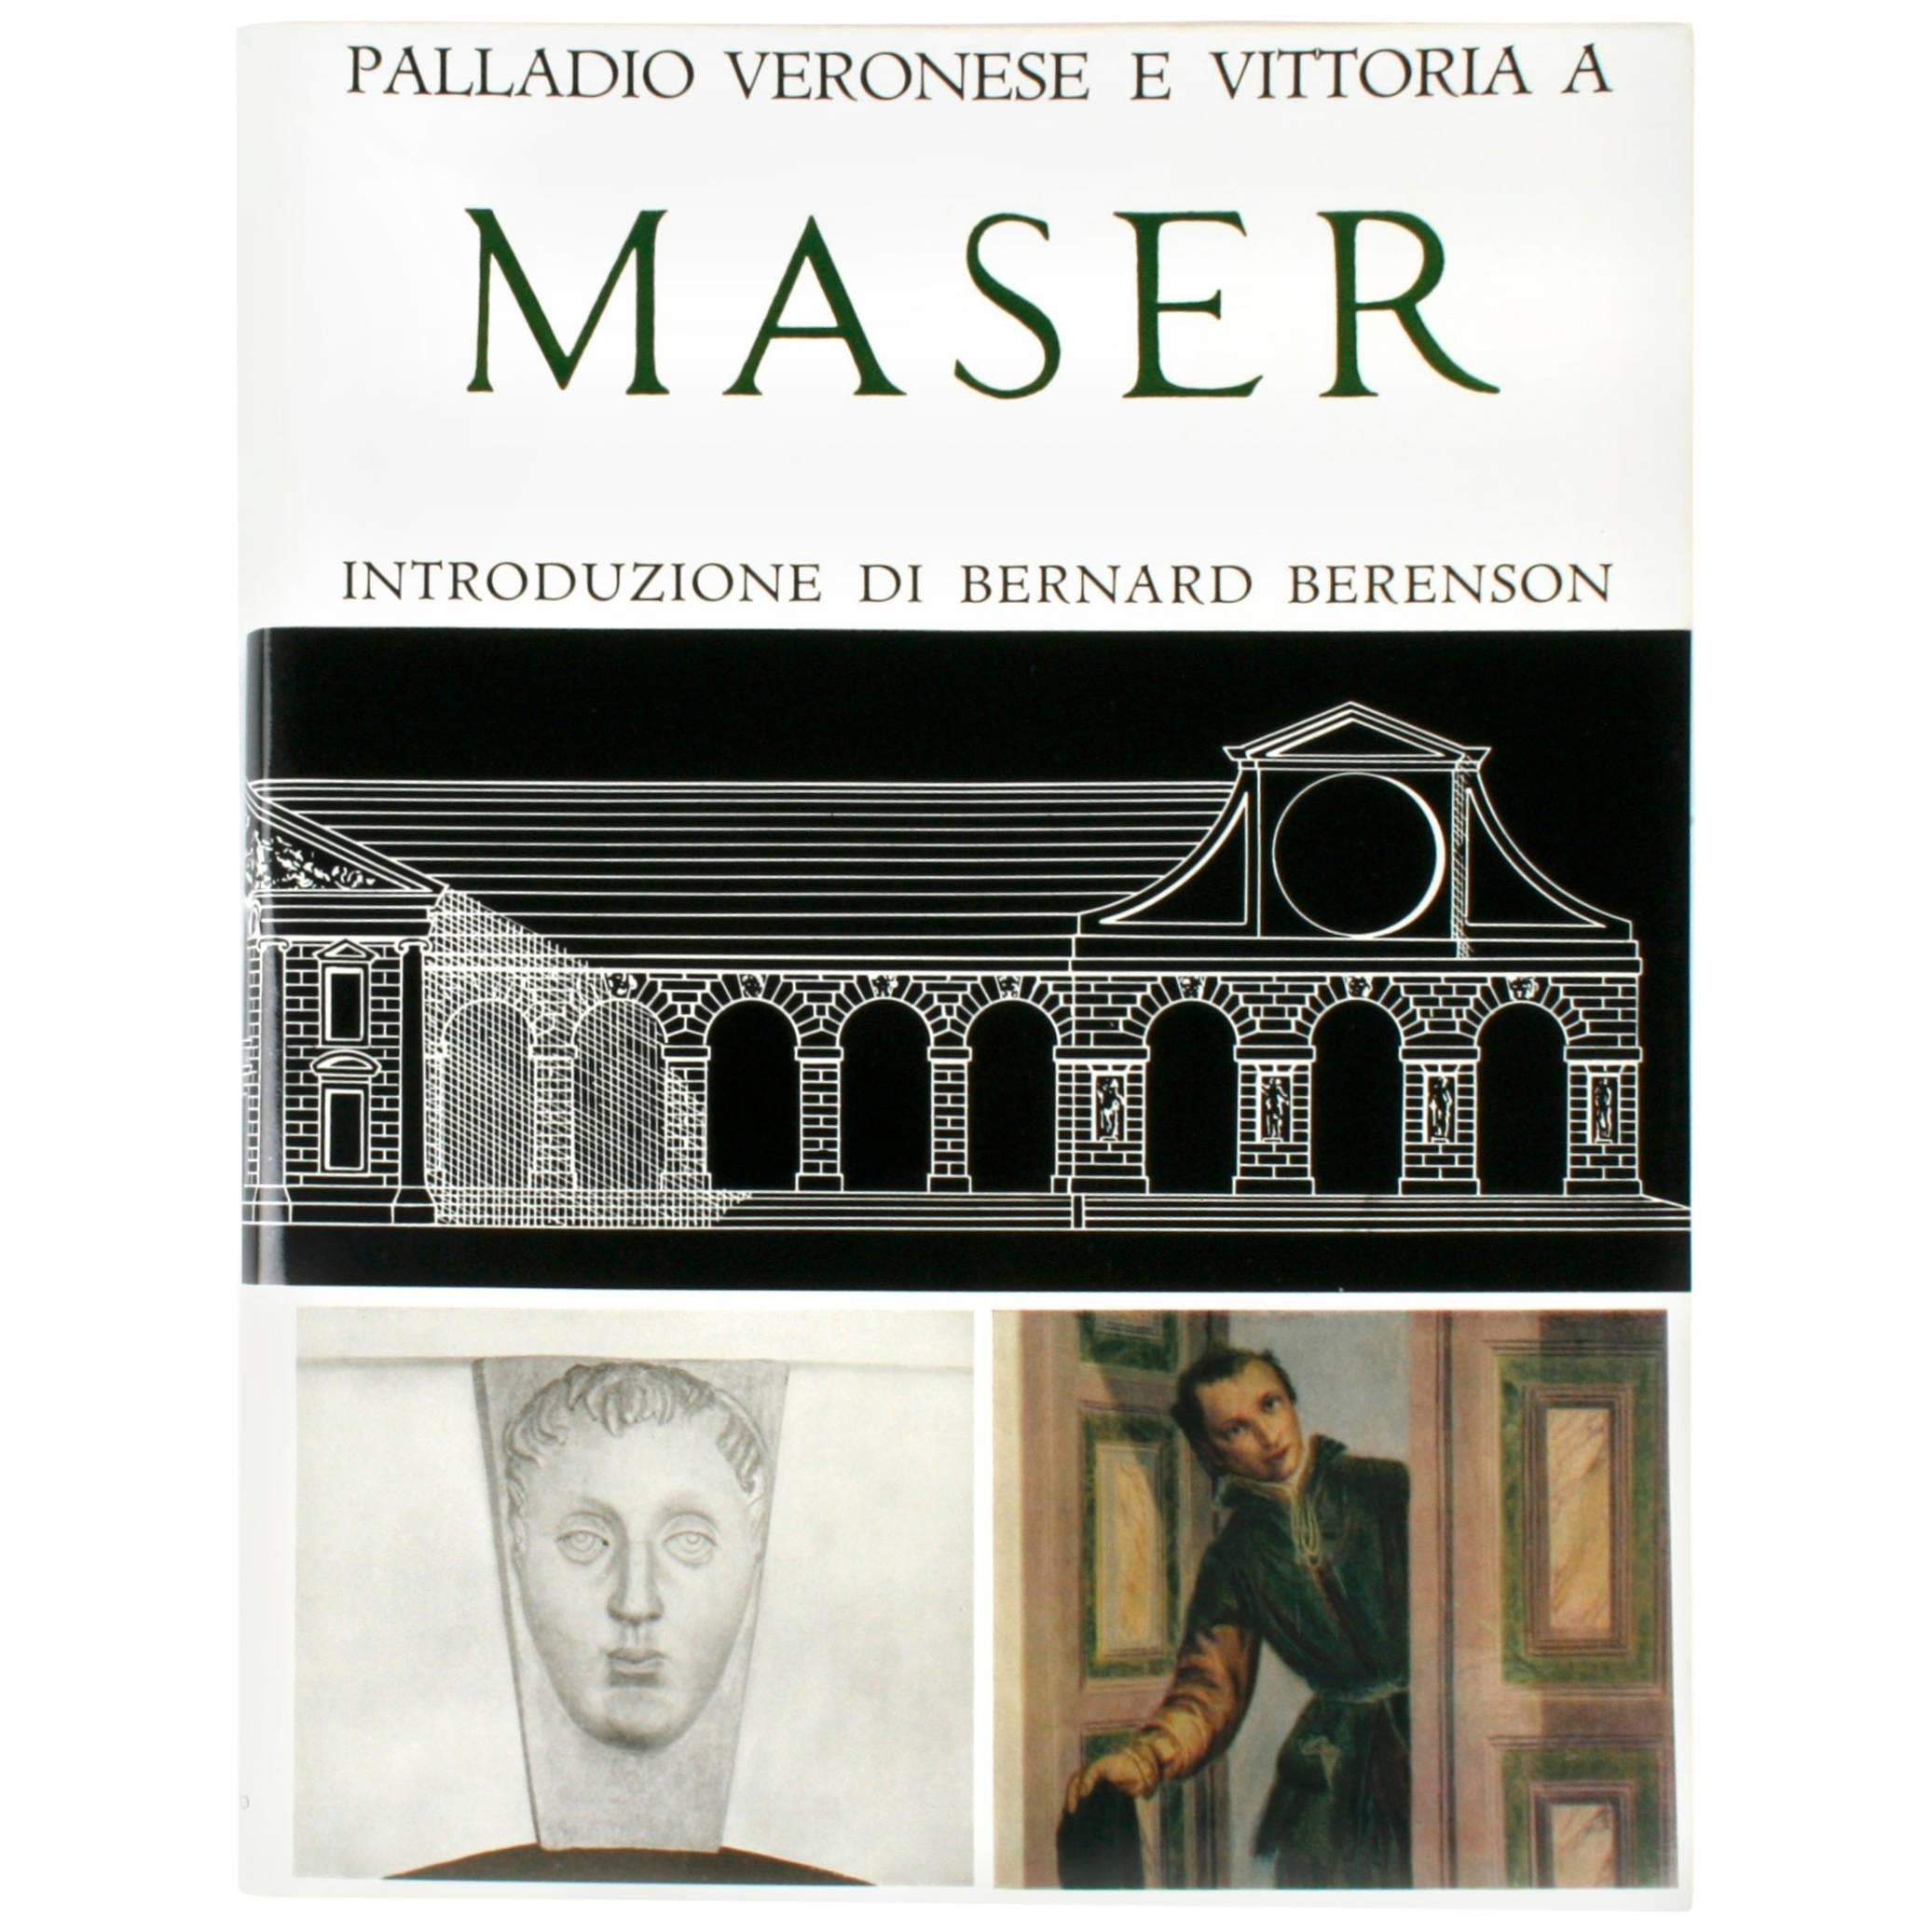 Palladio, Veronese e Vittoria a Maser, première édition